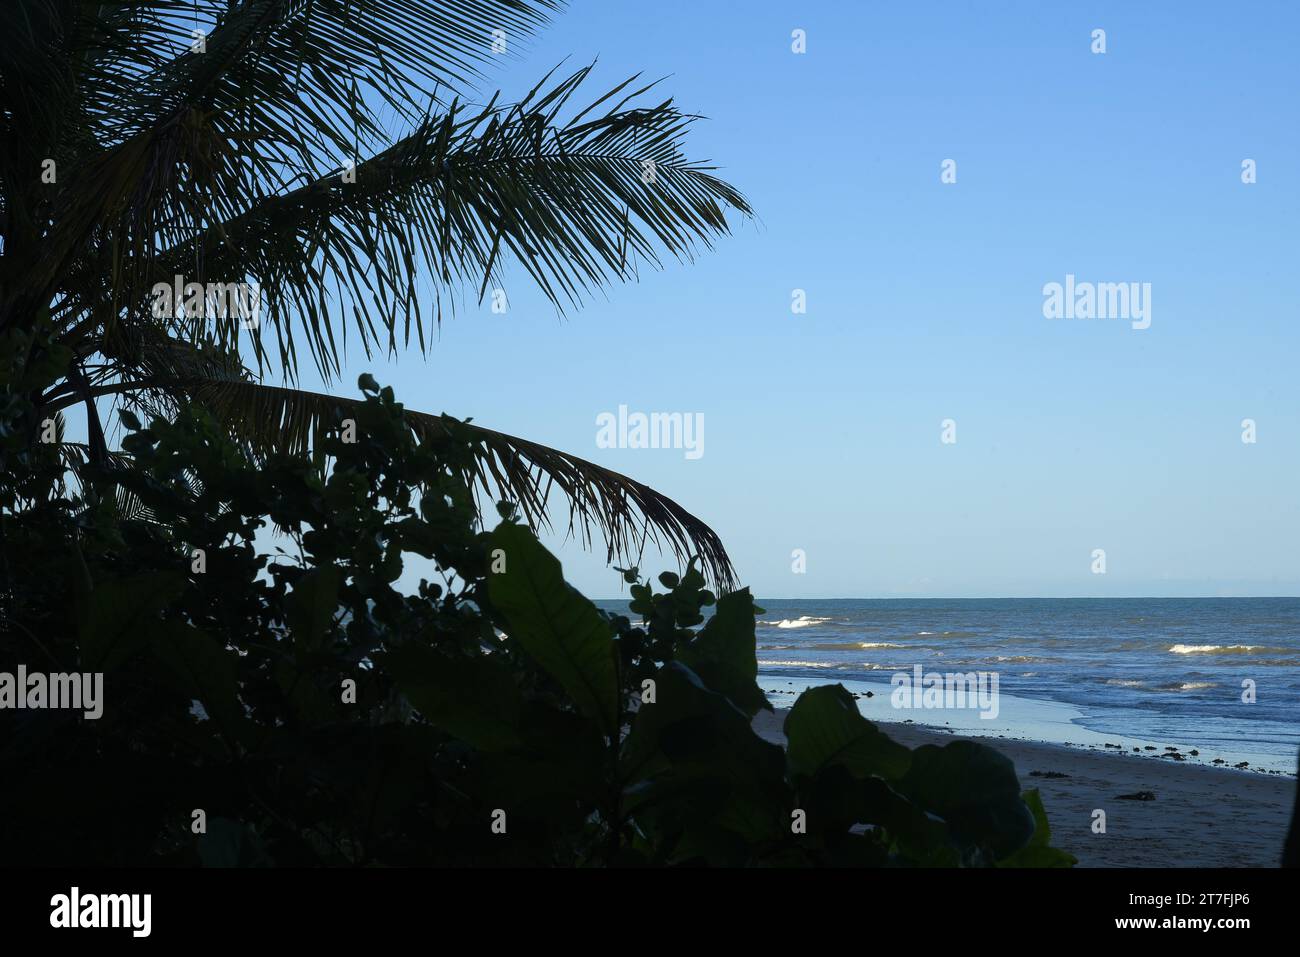 coucher de soleil sur la plage de sable avec vagues de mer vacances repos liberté image de l'océan Banque D'Images